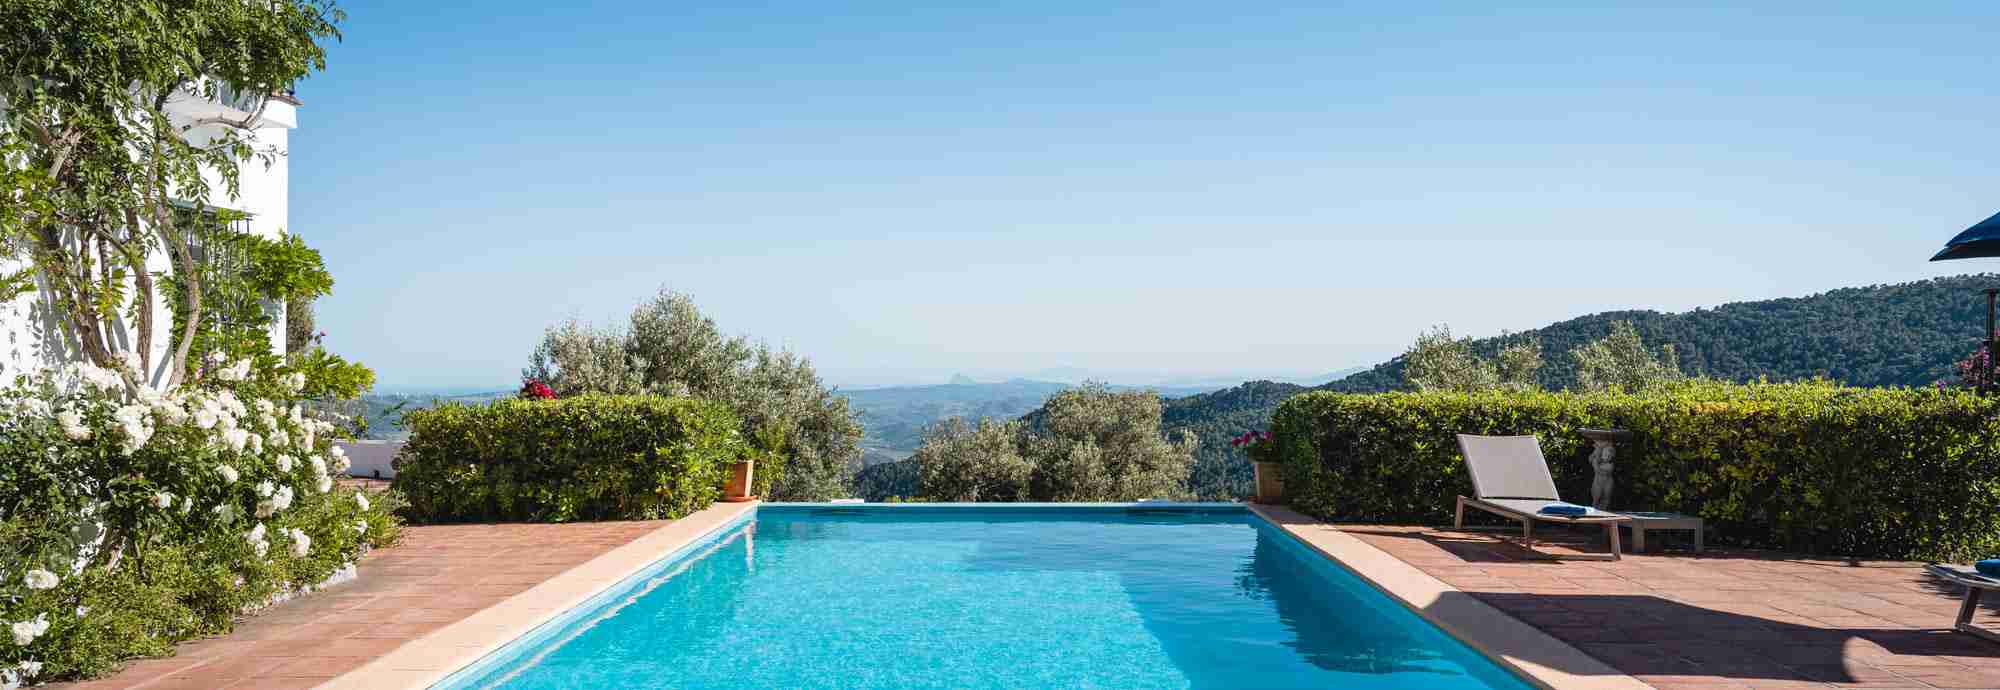 Casa familiar con irresistible piscina de 10 metros y vistas espectaculares